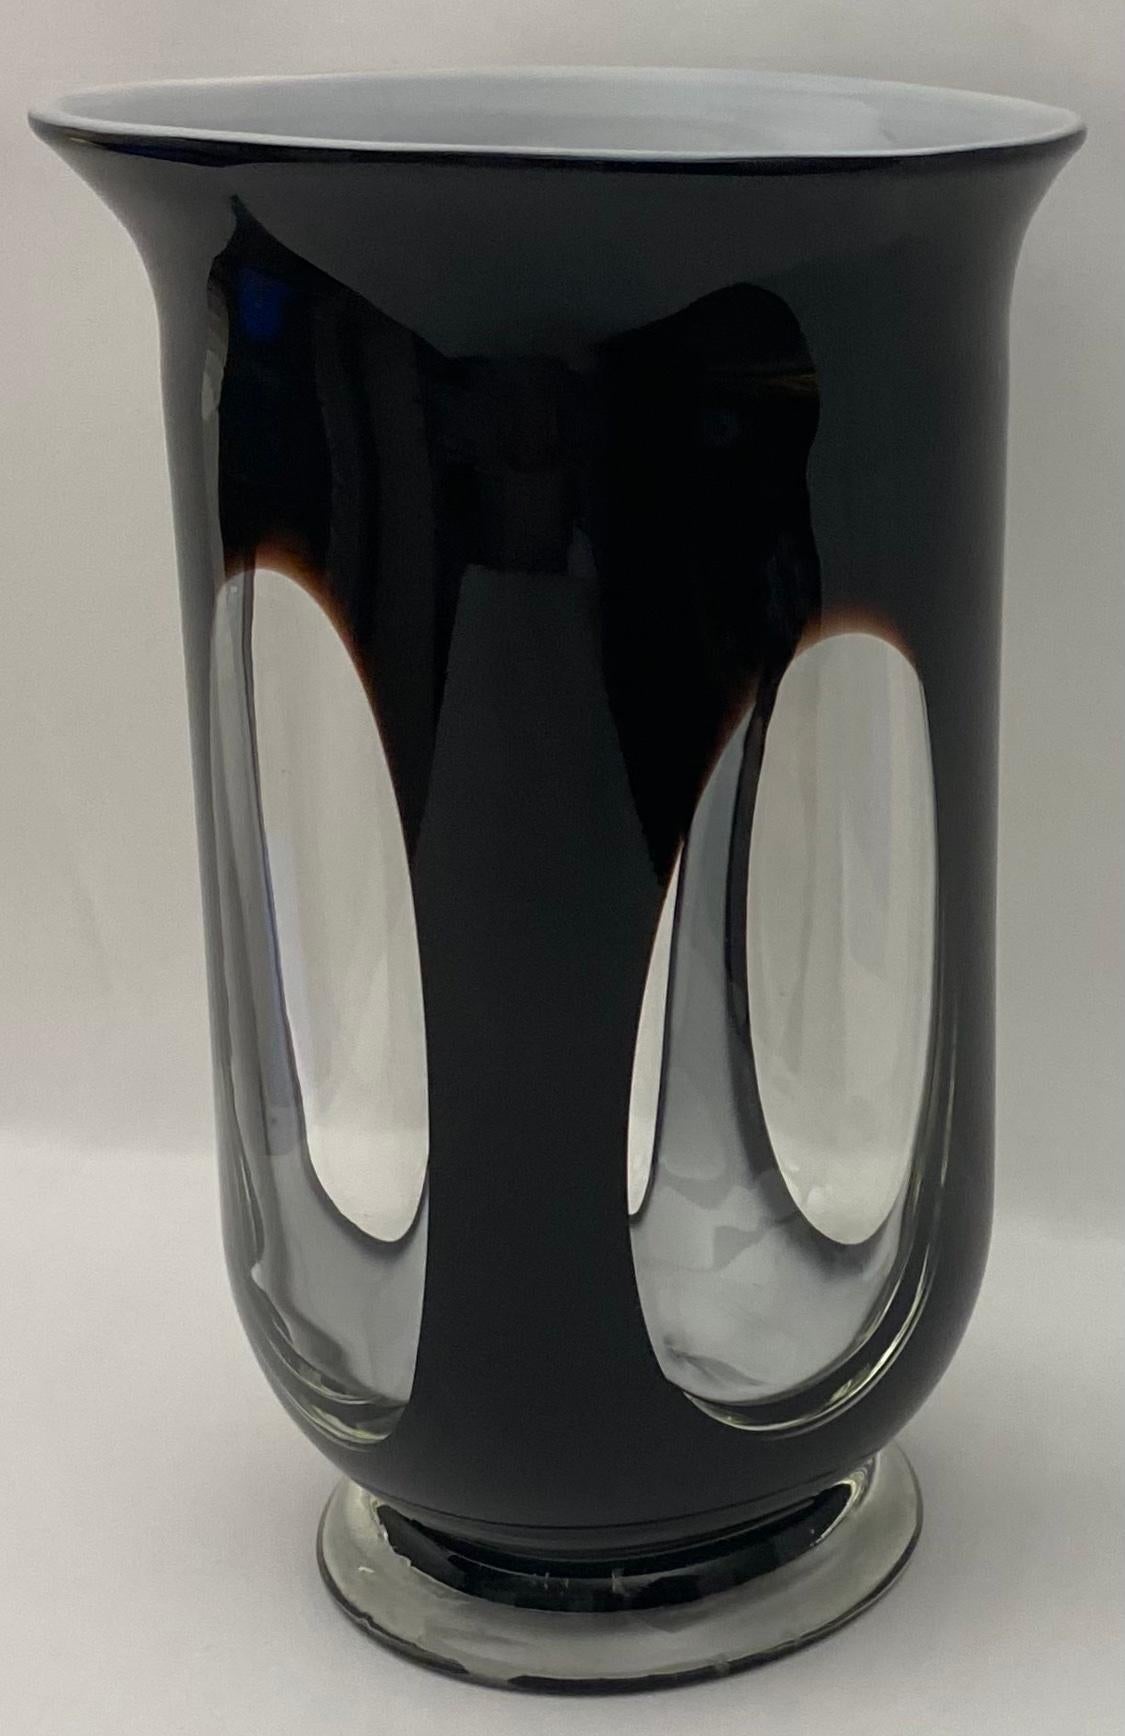 Un vase en verre d'art de Murano de bonne qualité, idéal pour mettre en valeur vos fleurs préférées. 

Mesures : 7 1/4